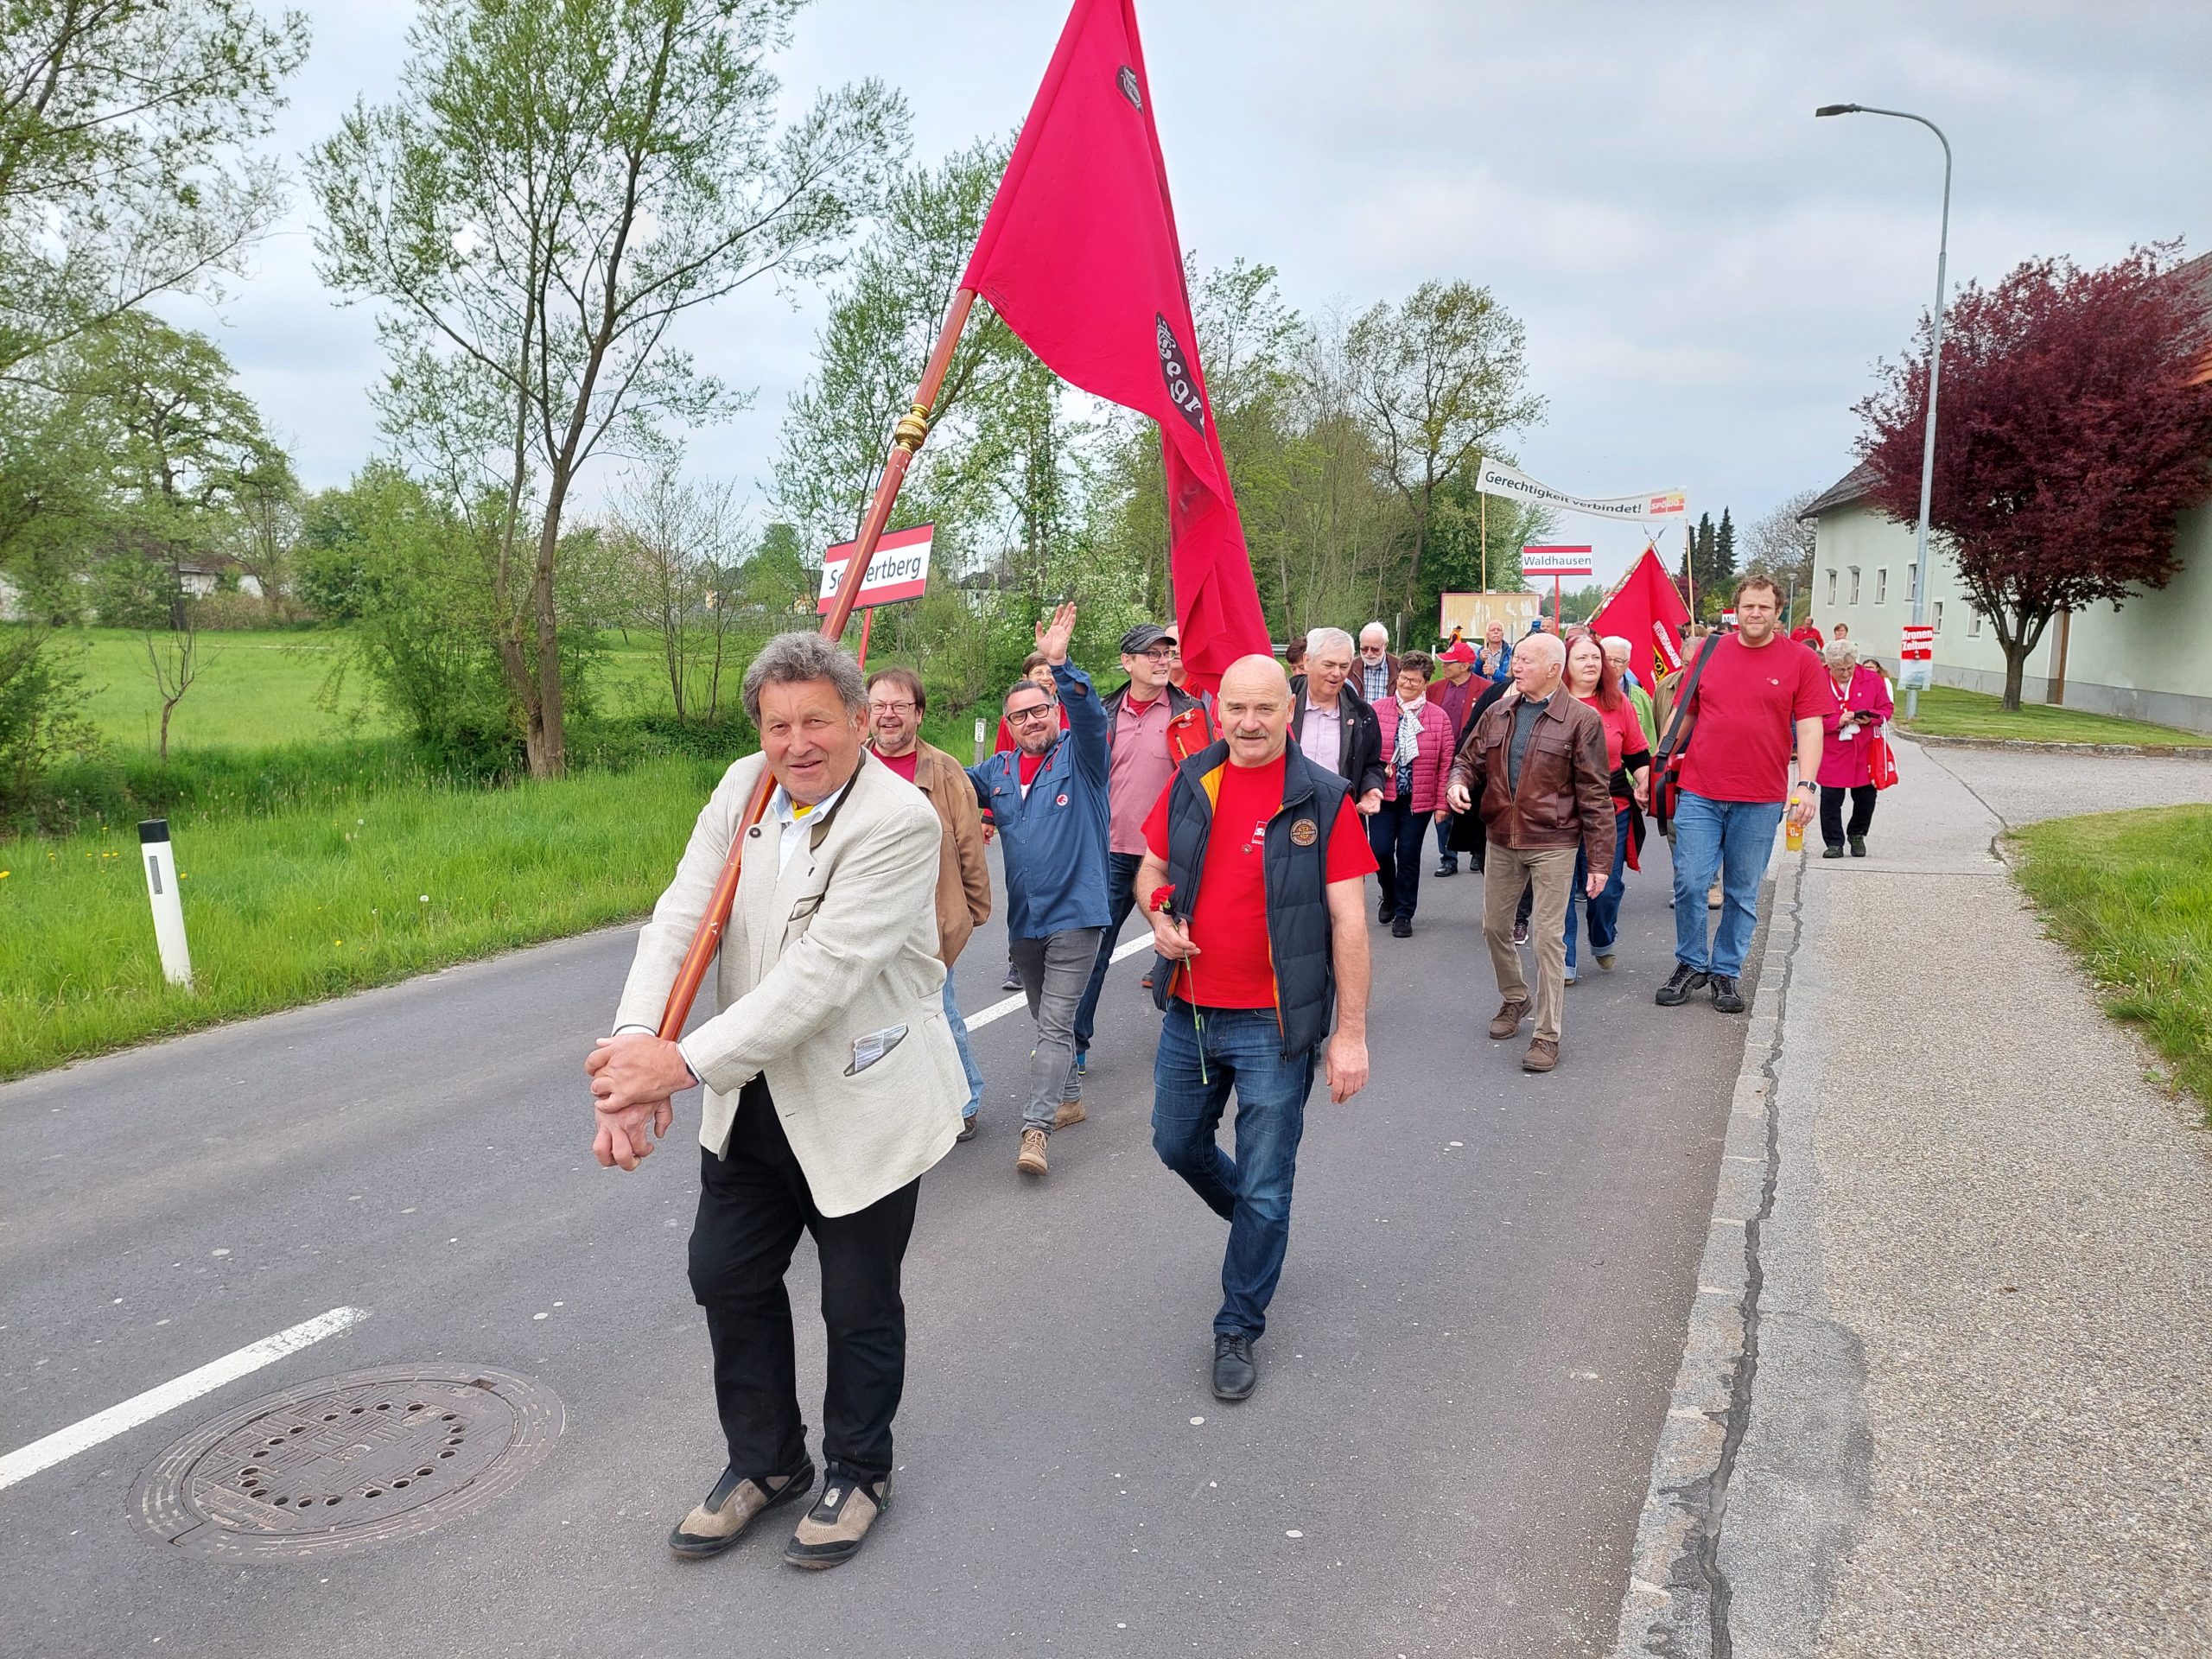 Hoch Der 1 Mai SpÖ Feiert Tag Der Arbeit In Schwertberg SpÖ Bezirksorganisation Perg 6834